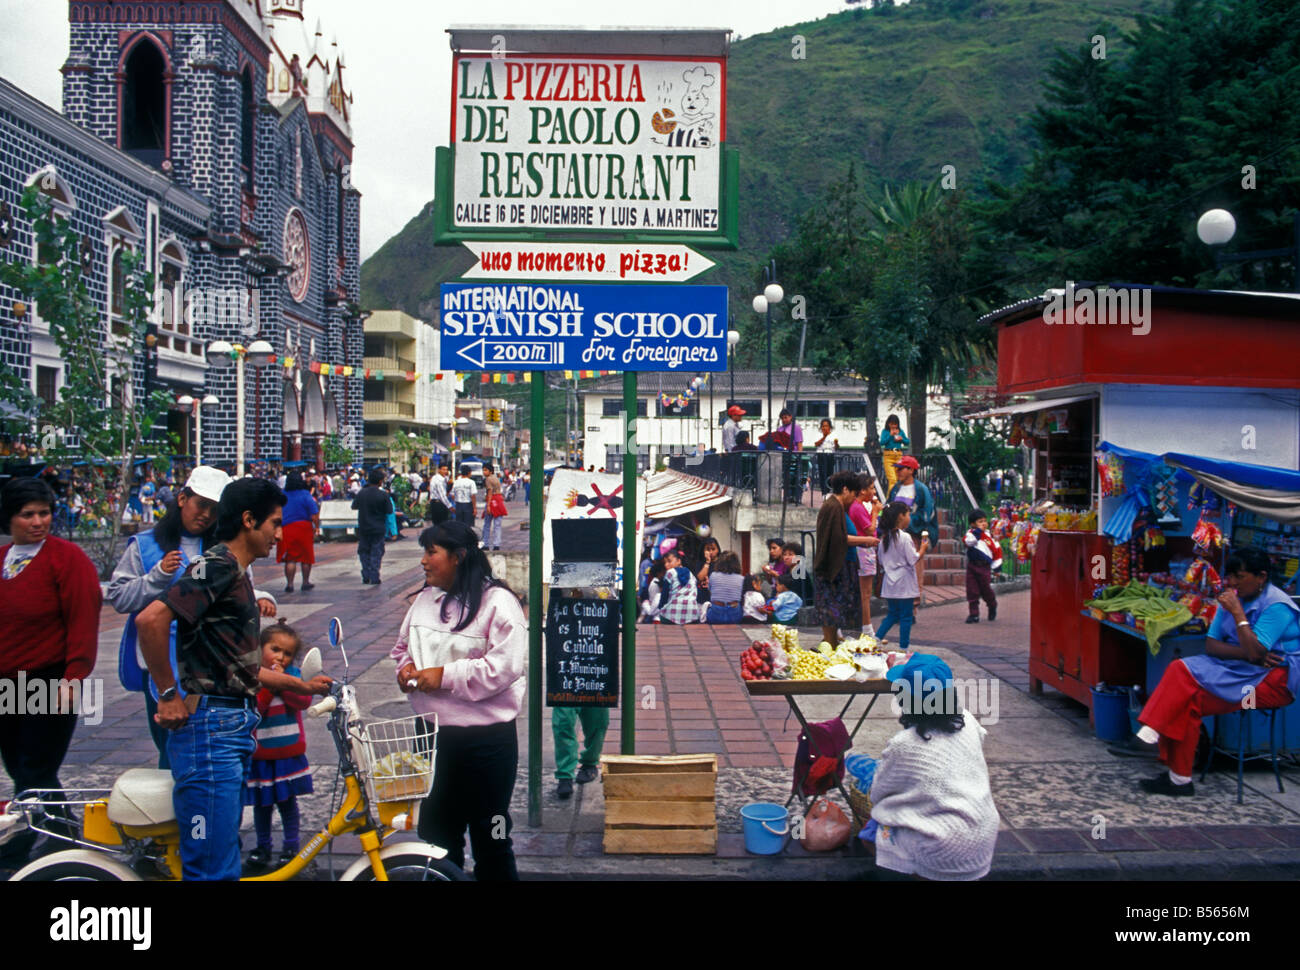 Ecuadorans ecuadorianischen Volk Shopper Shopping in der Hauptstadt von Banos in der Provinz Tungurahua in Ecuador Südamerika Stockfoto